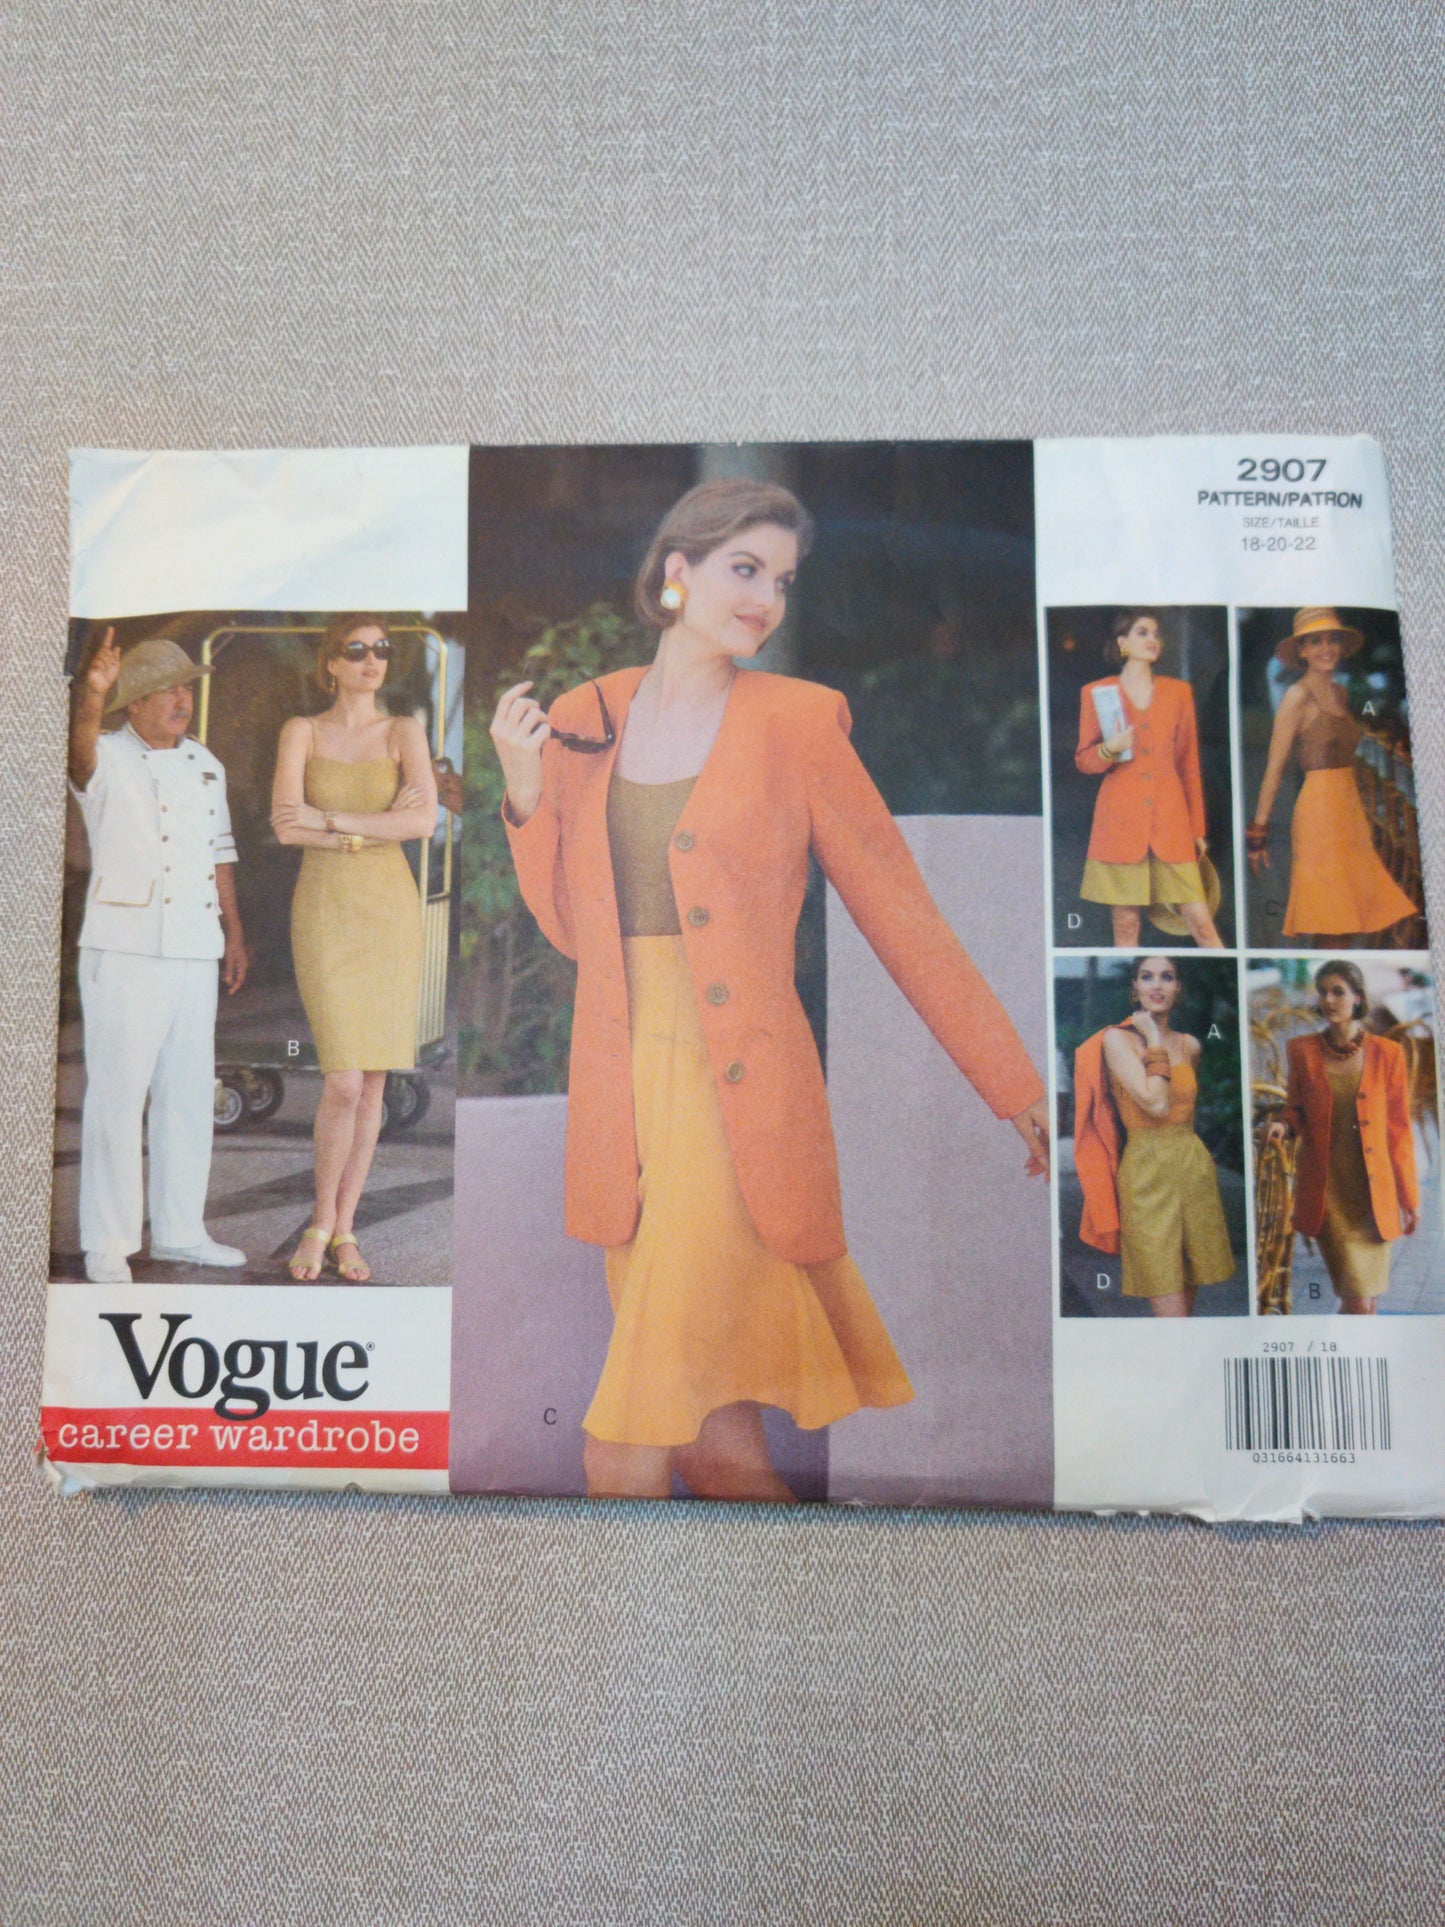 Vogue 2907 size 18-20-22